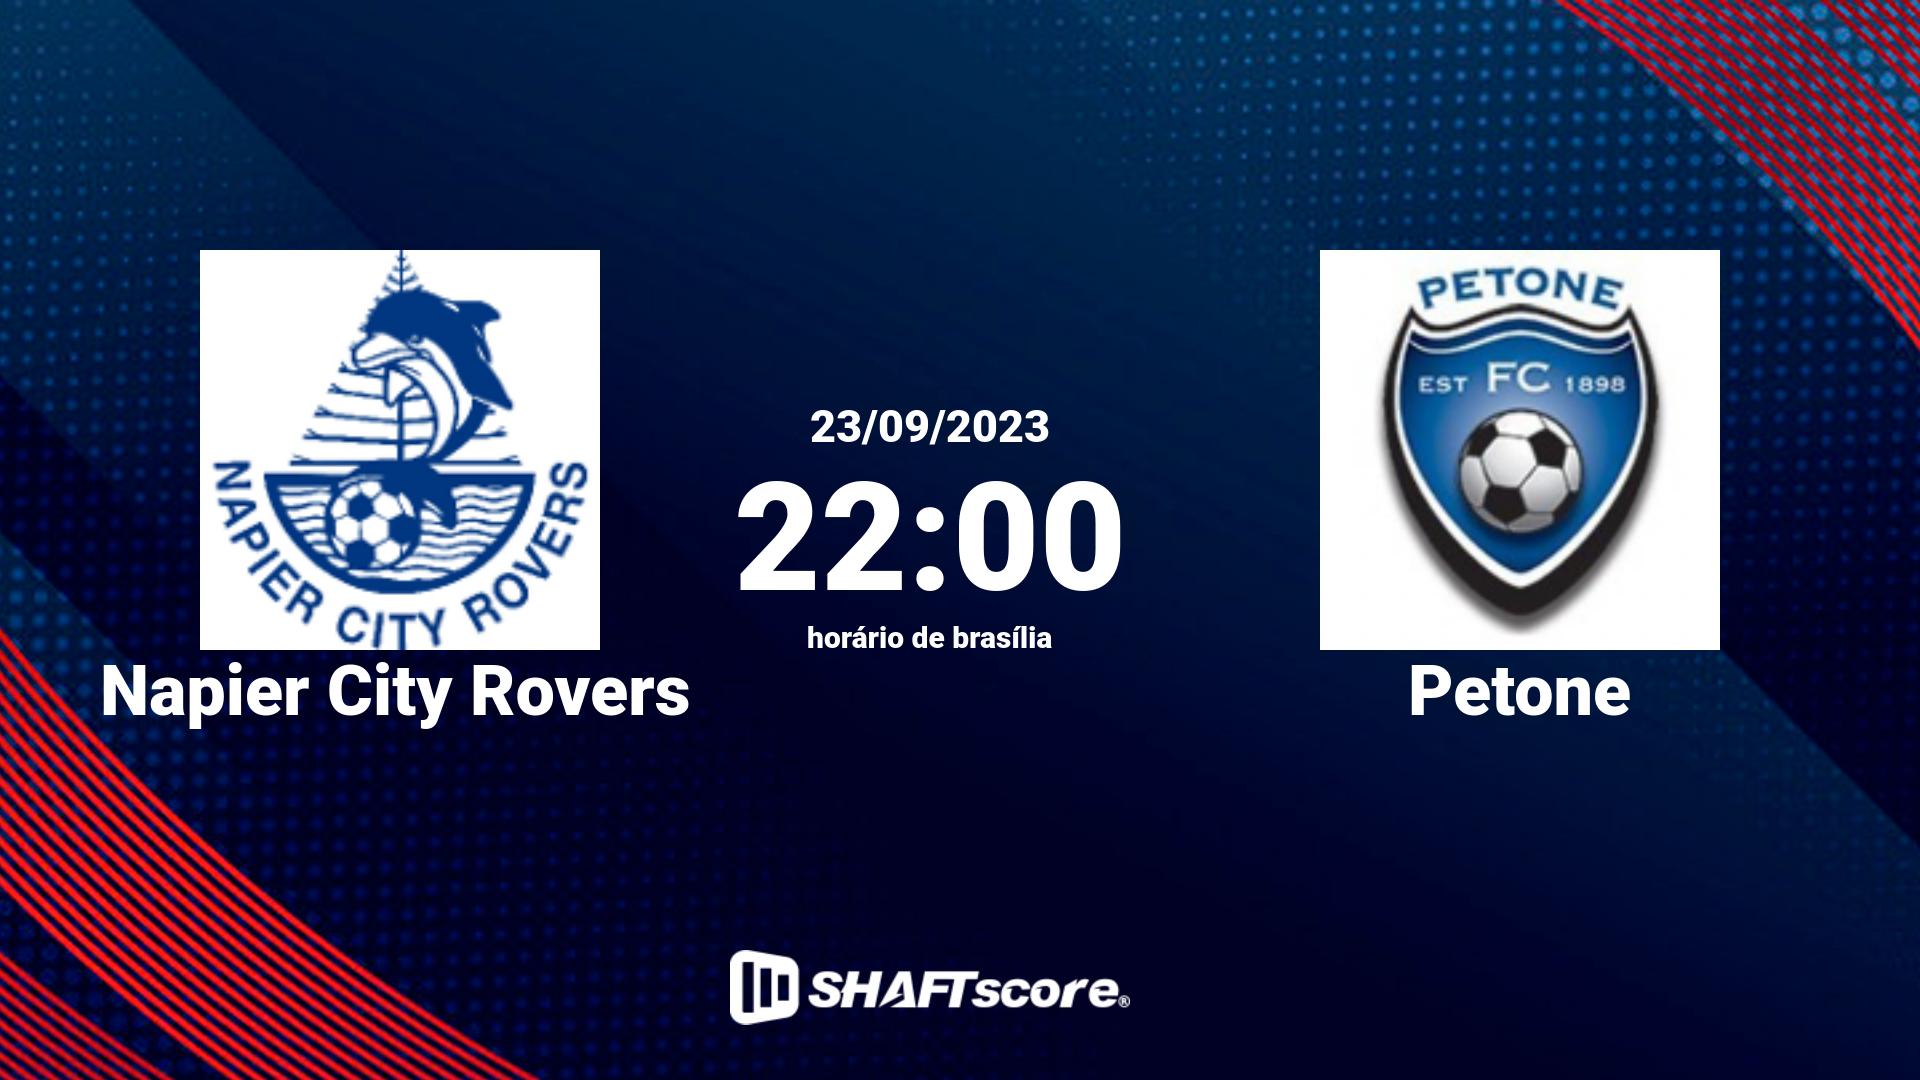 Estatísticas do jogo Napier City Rovers vs Petone 23.09 22:00